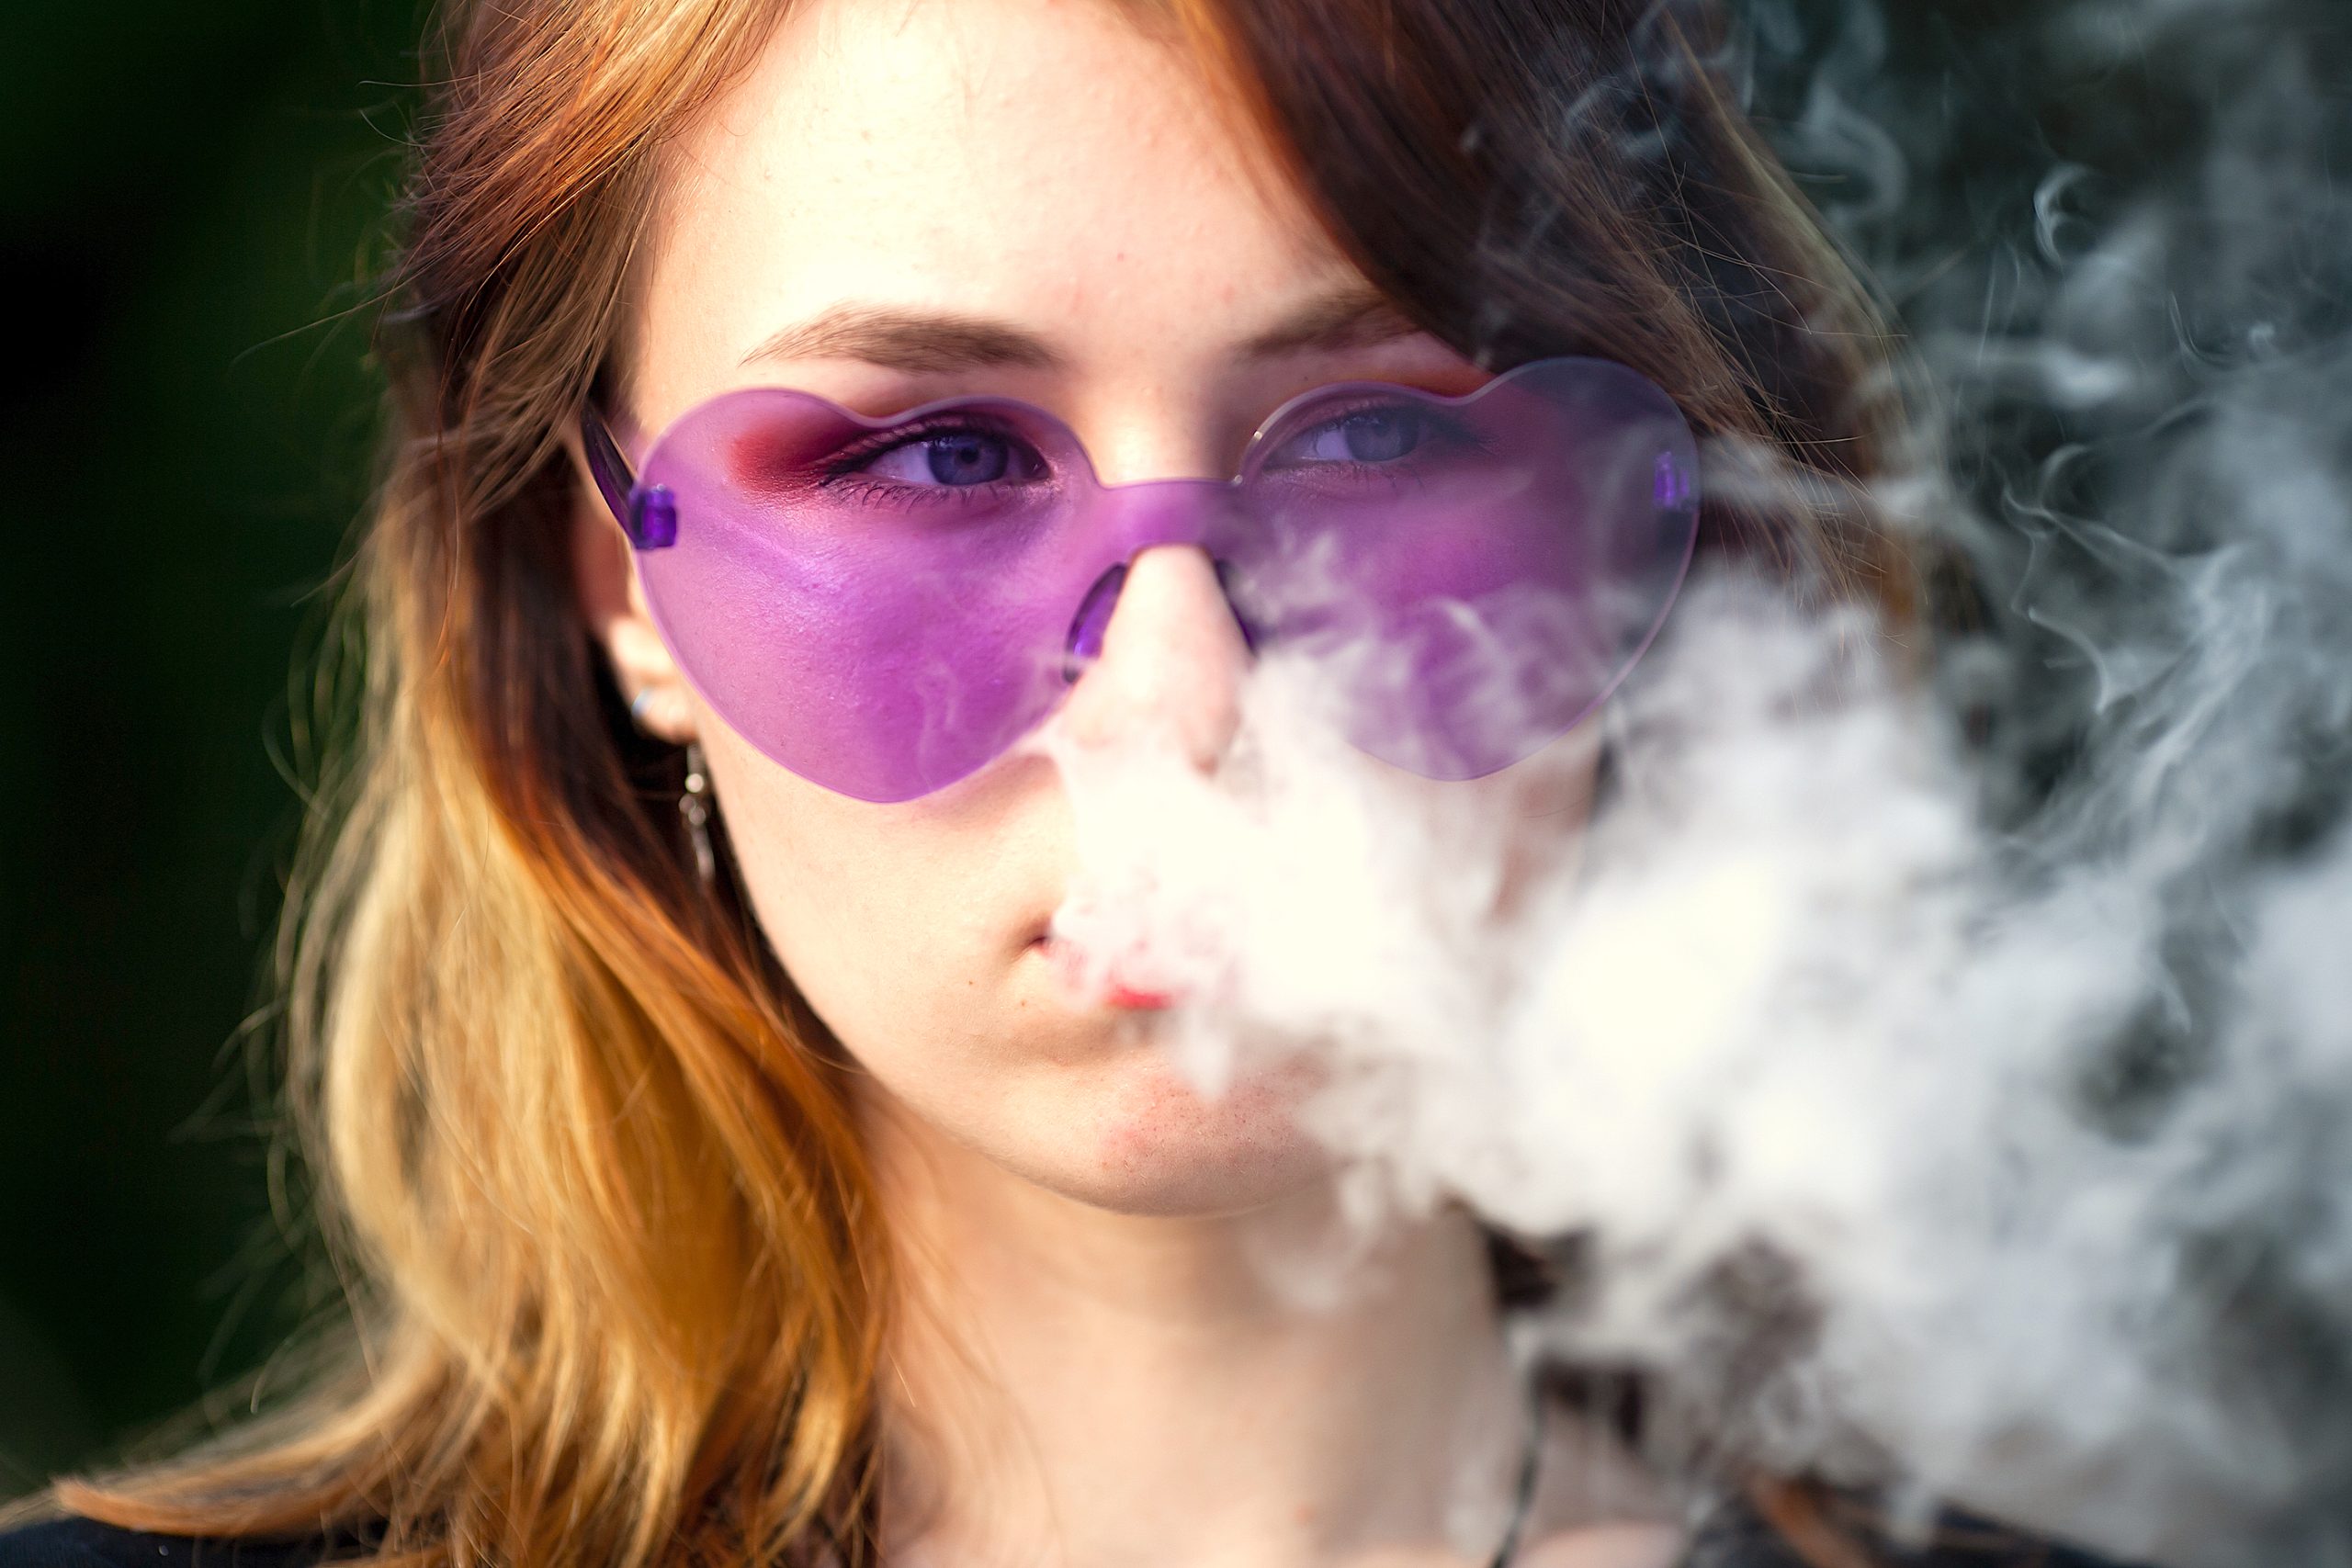 Nicotina y marihuana aumentan depresión y ansiedad en jóvenes